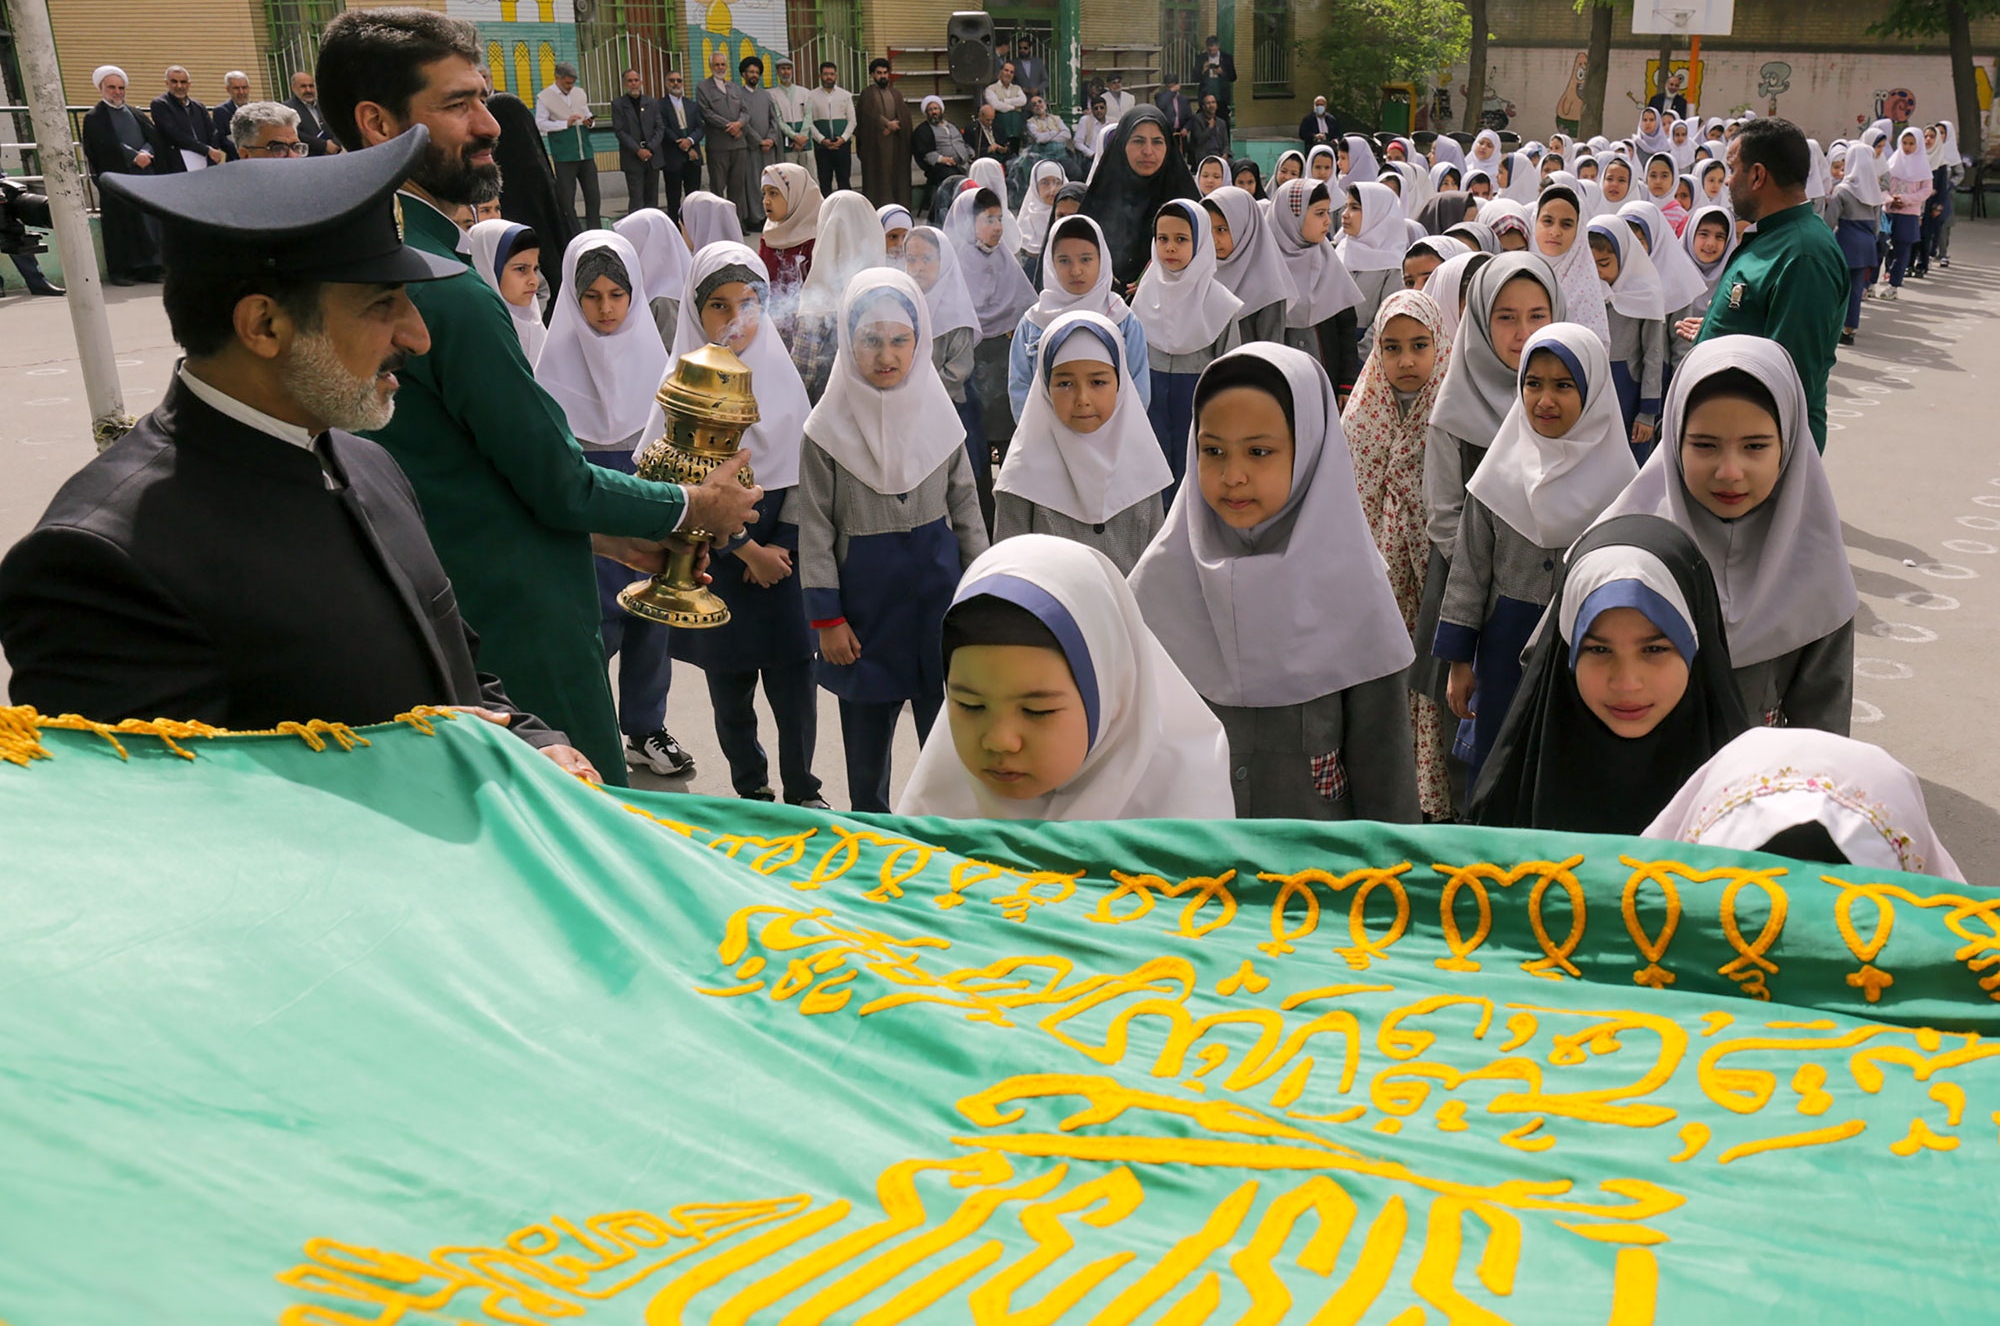 چهارشنبه های امام رضایی در دبستان دخترانه عترت